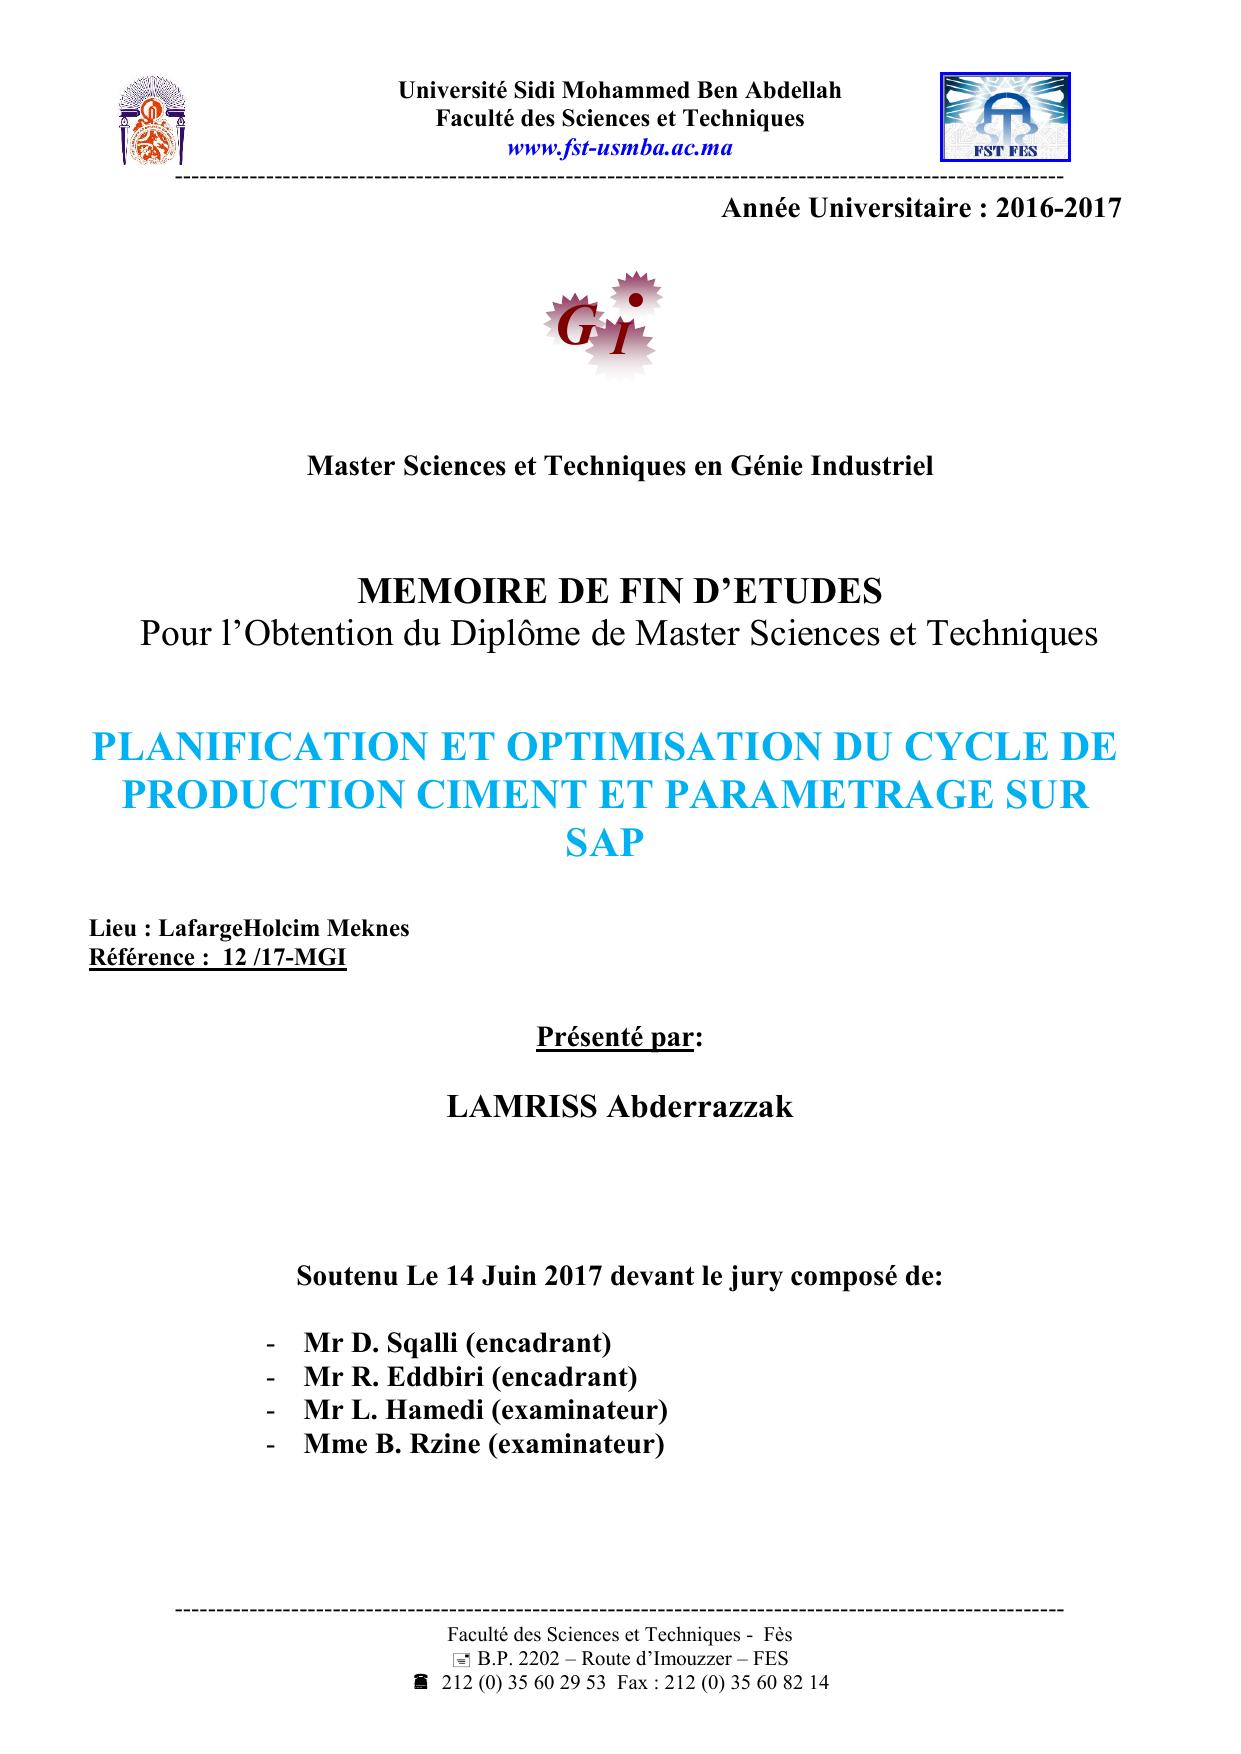 Planification et optimisation du cycle de production ciment et paramétrage sur SAP